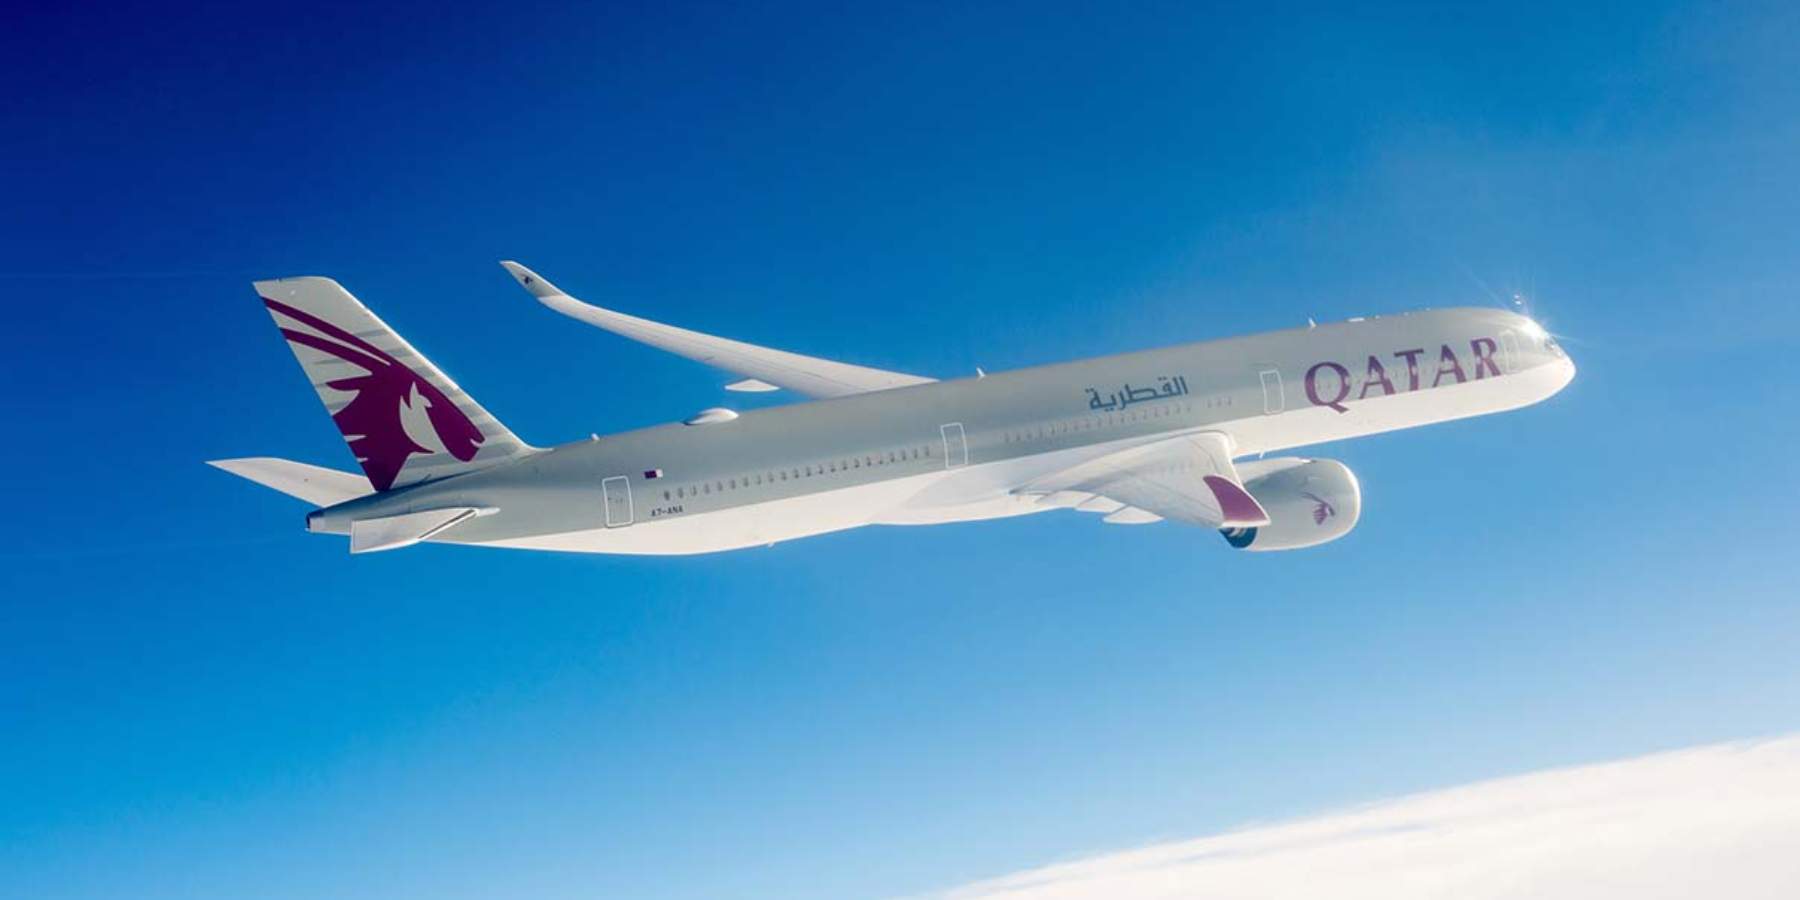 Qatar Airways amplía su flota de aviones A350-1000